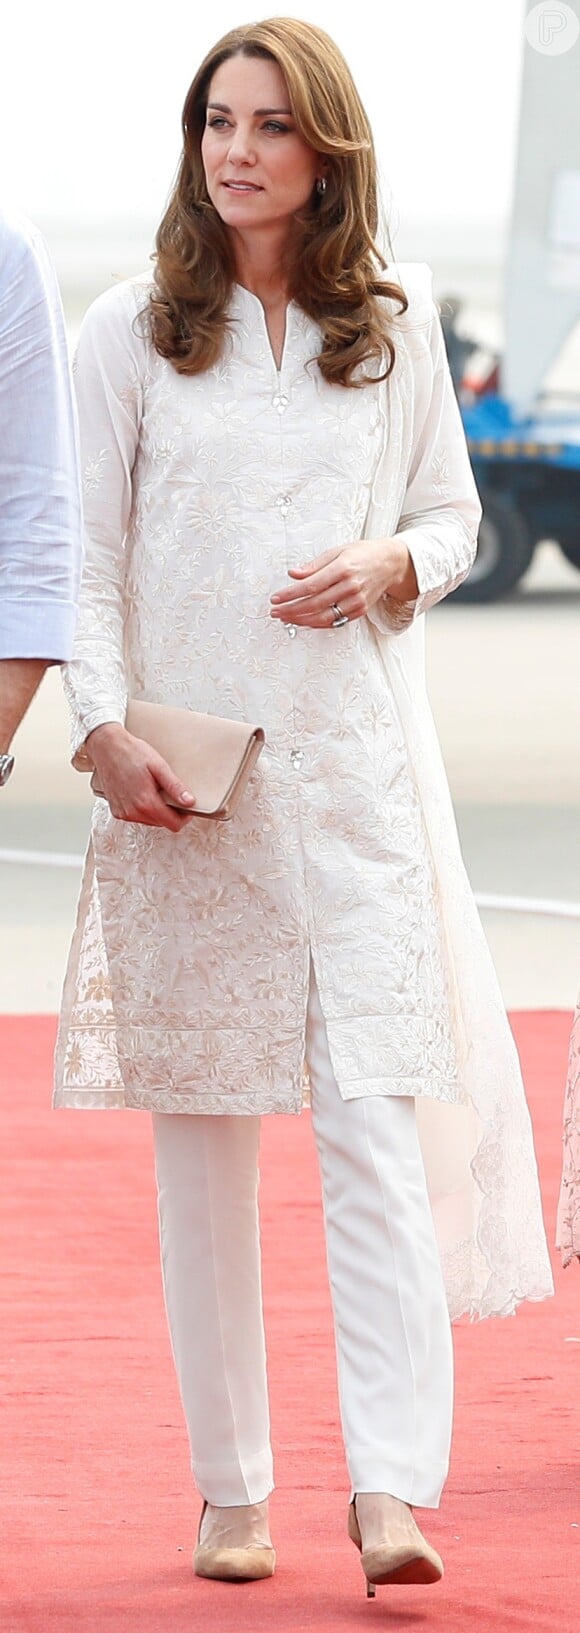 Kate Middleton aposta em túnica com bordado delicado e lenço em visita à Academia Nacional de Críquete, no Paquistão, nesta quinta-feira, dia 17 de outubro de 2019